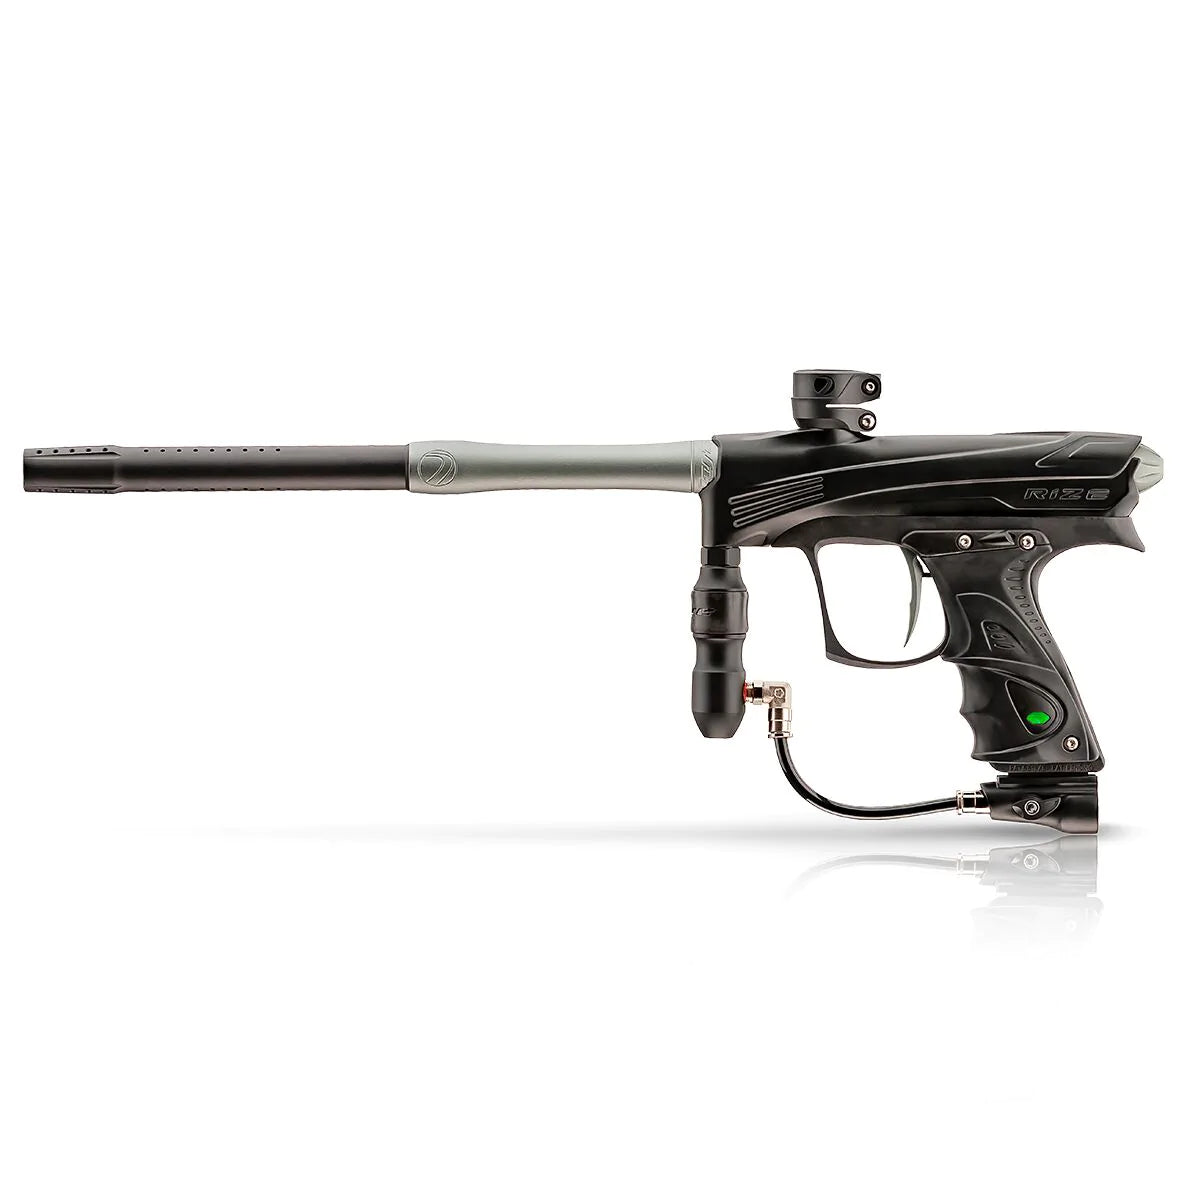 Dye Rize CZR Paintball Gun - Black / Gray